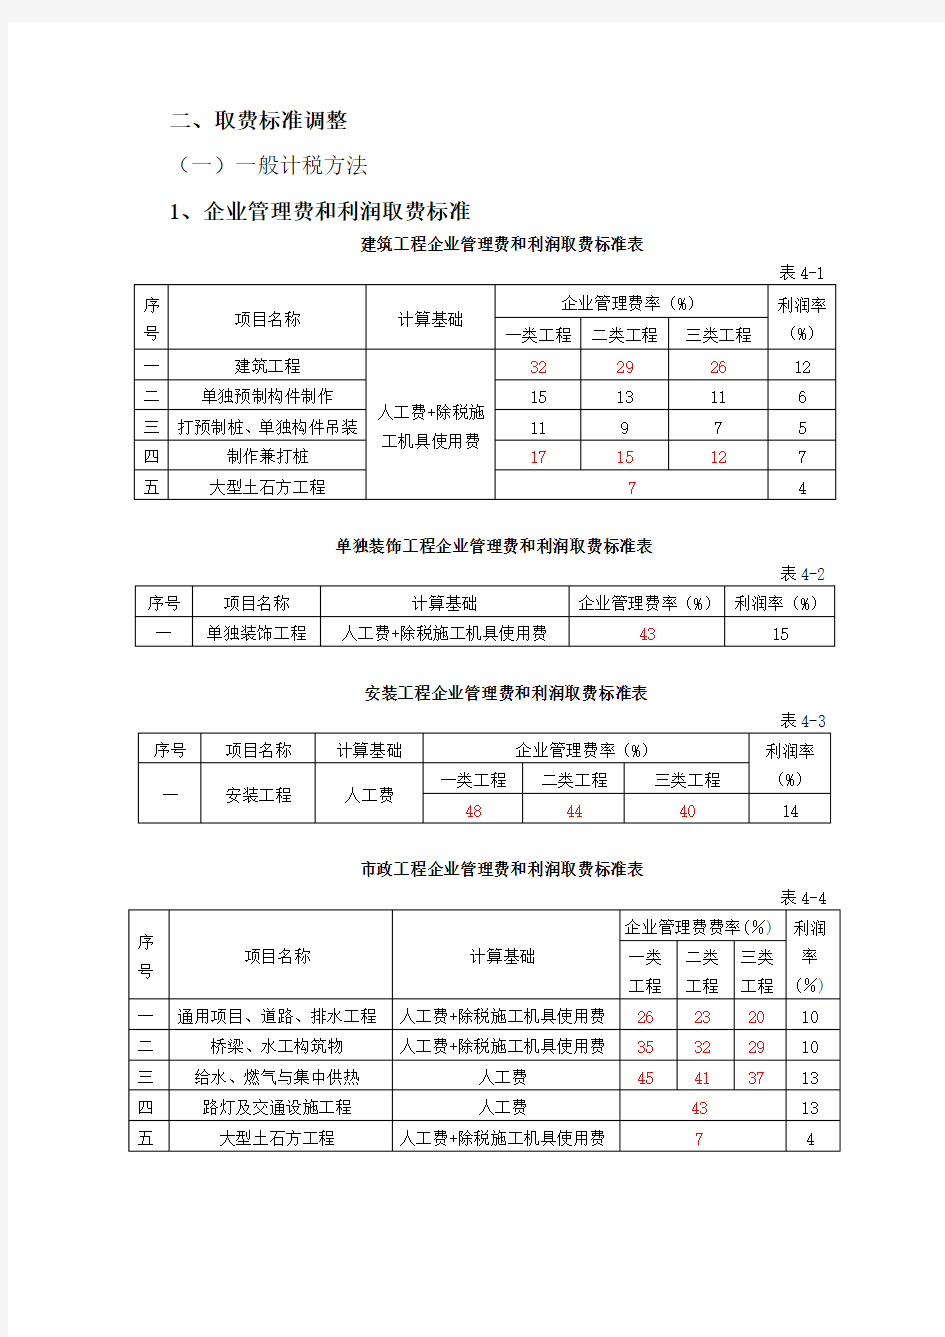 江苏省建设工程费用定额2014年营改增后调整内容